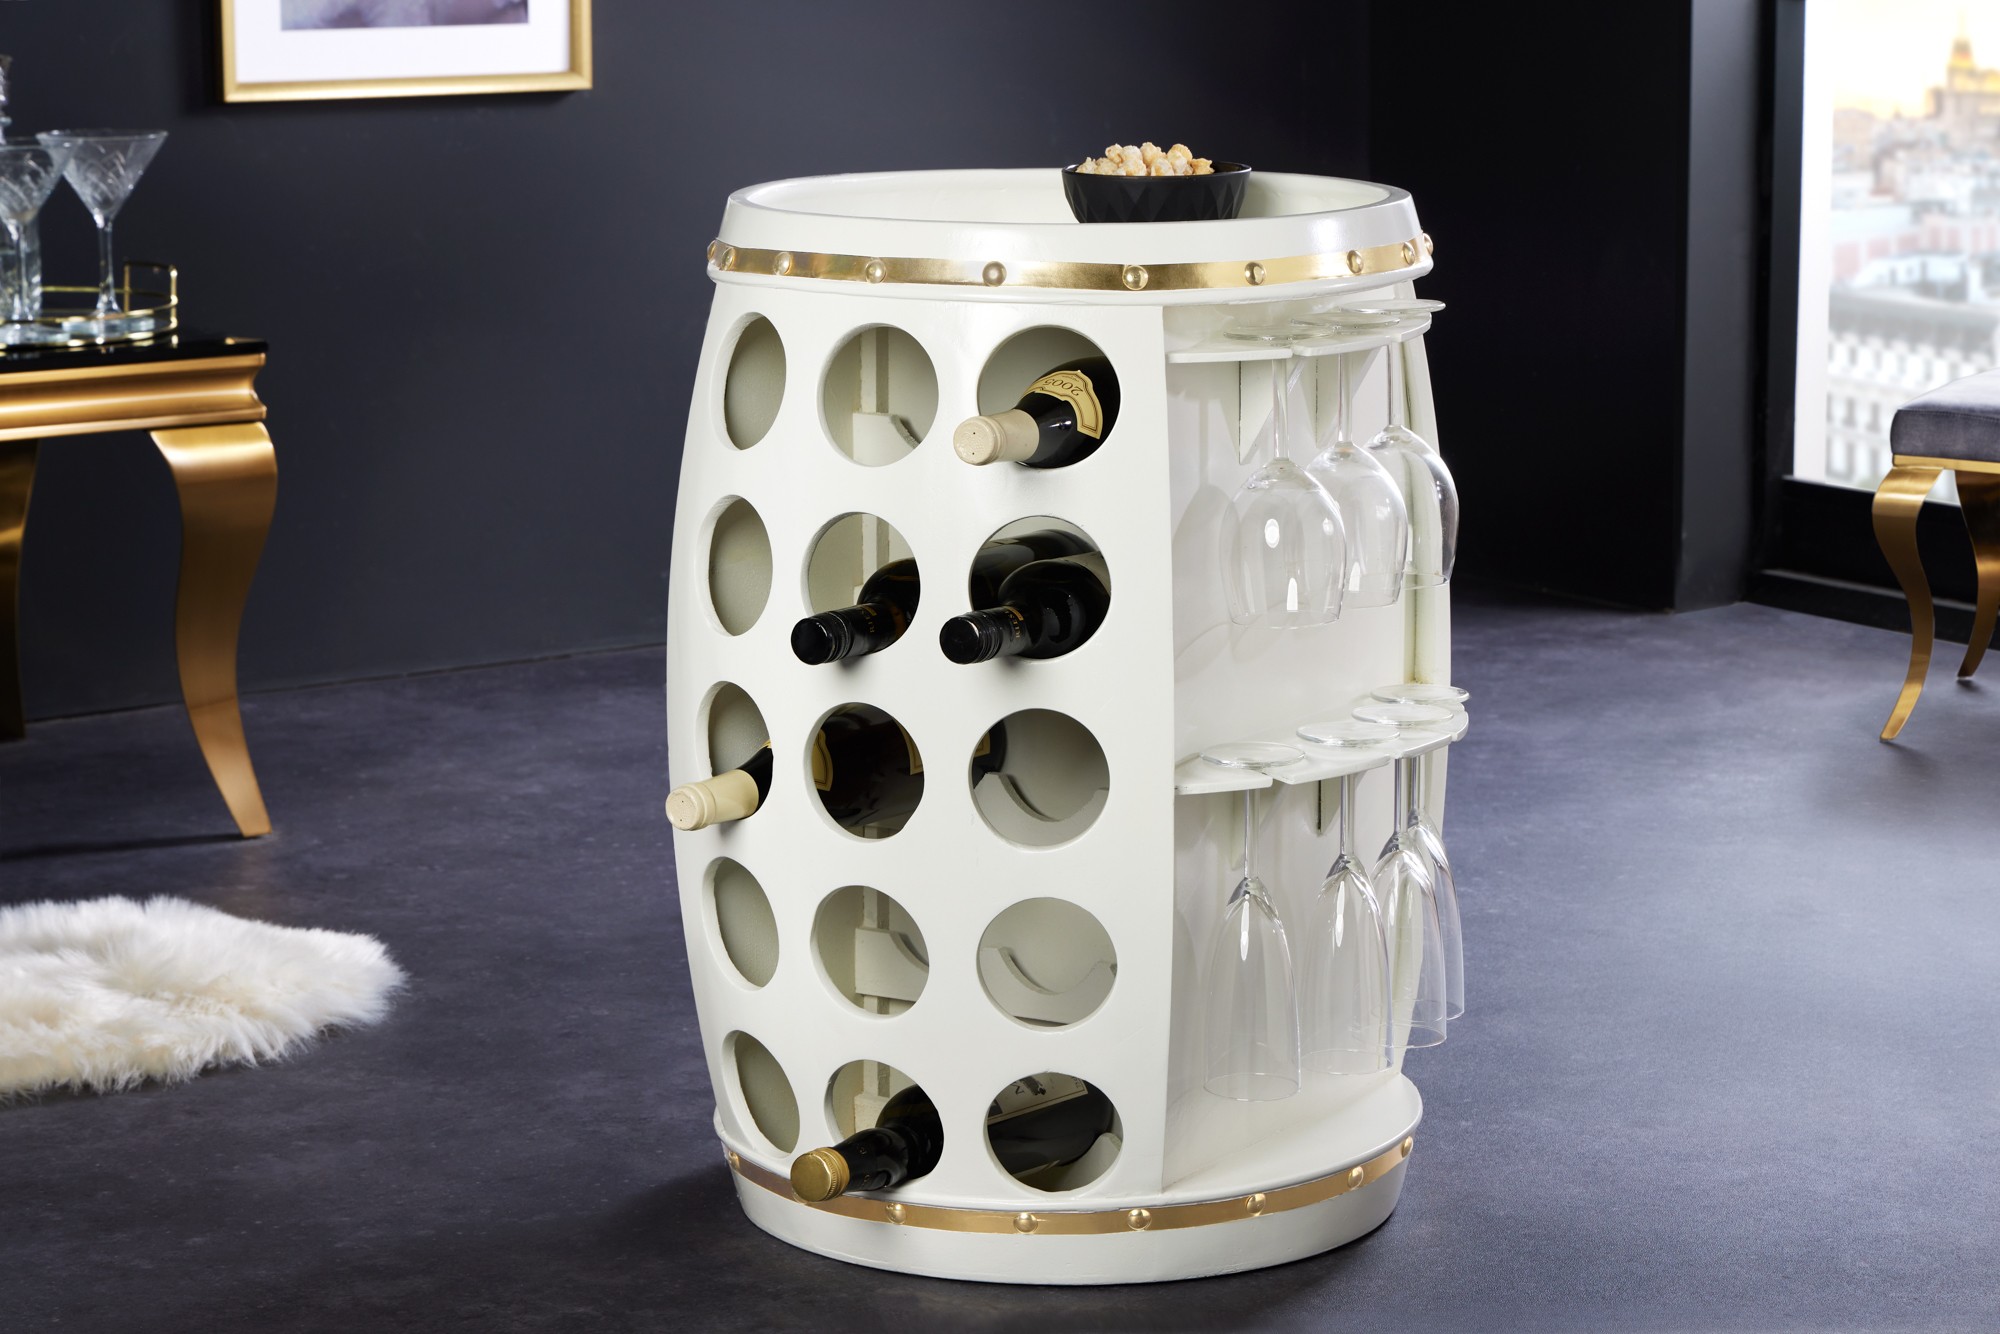 Estila Luxusná dizajnová vinotéka Crawley v art deco štýle v tvare suda biela so zlatými detailmi 66 cm